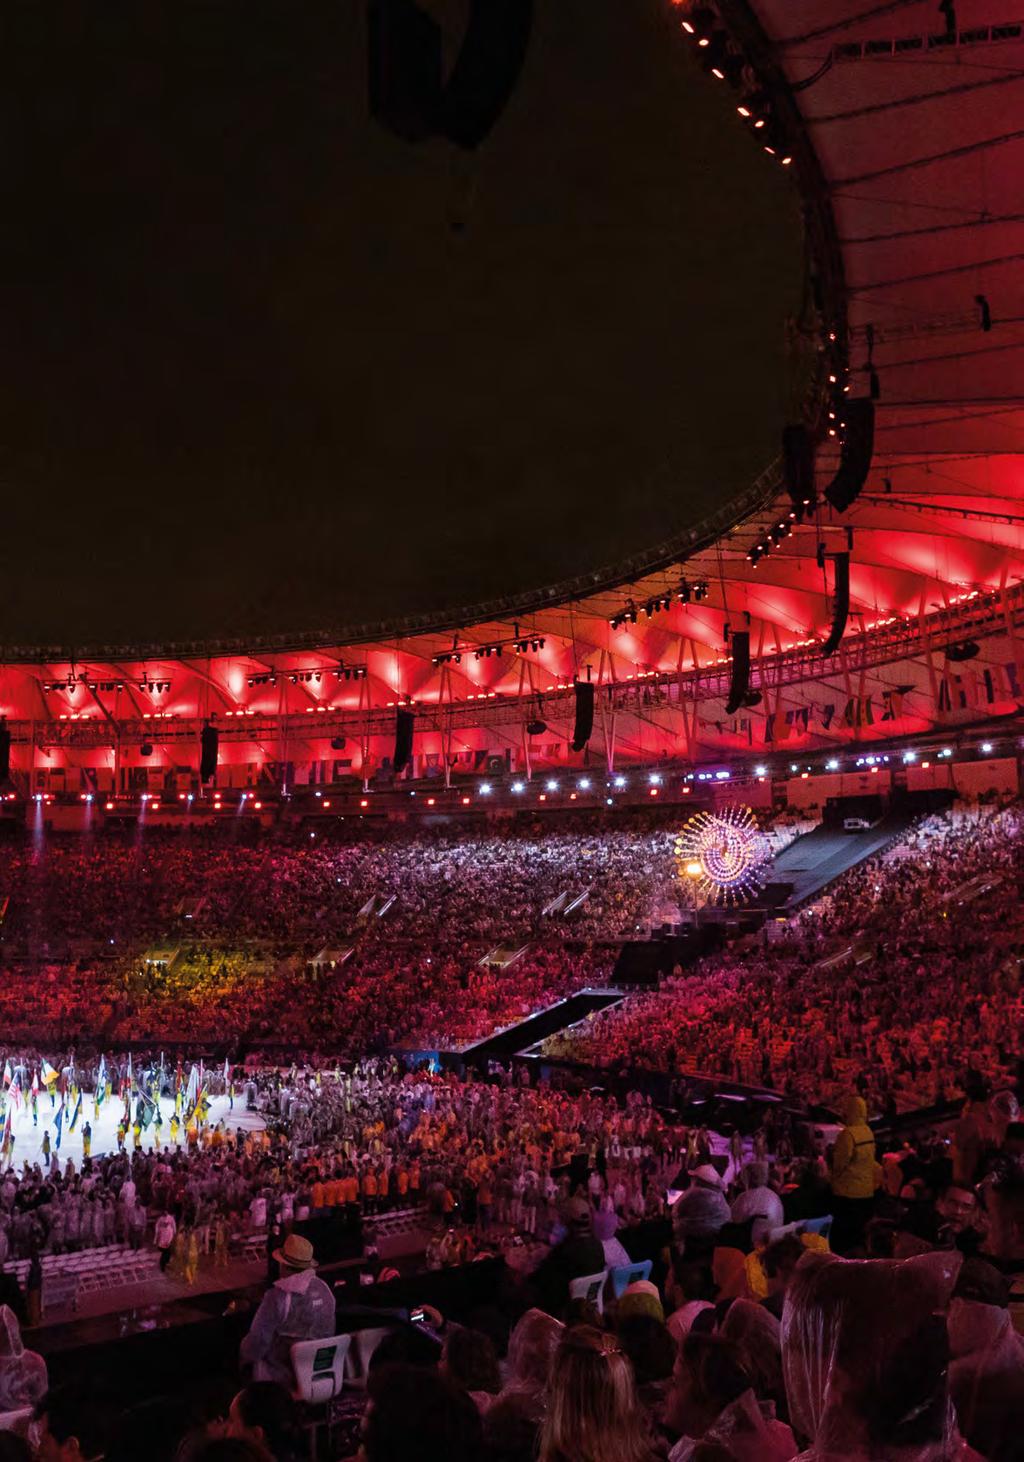 Bridgestone: Worldwide Partner of the Olympic Games Ingen er født olympisk mester. Mestere utvikles.